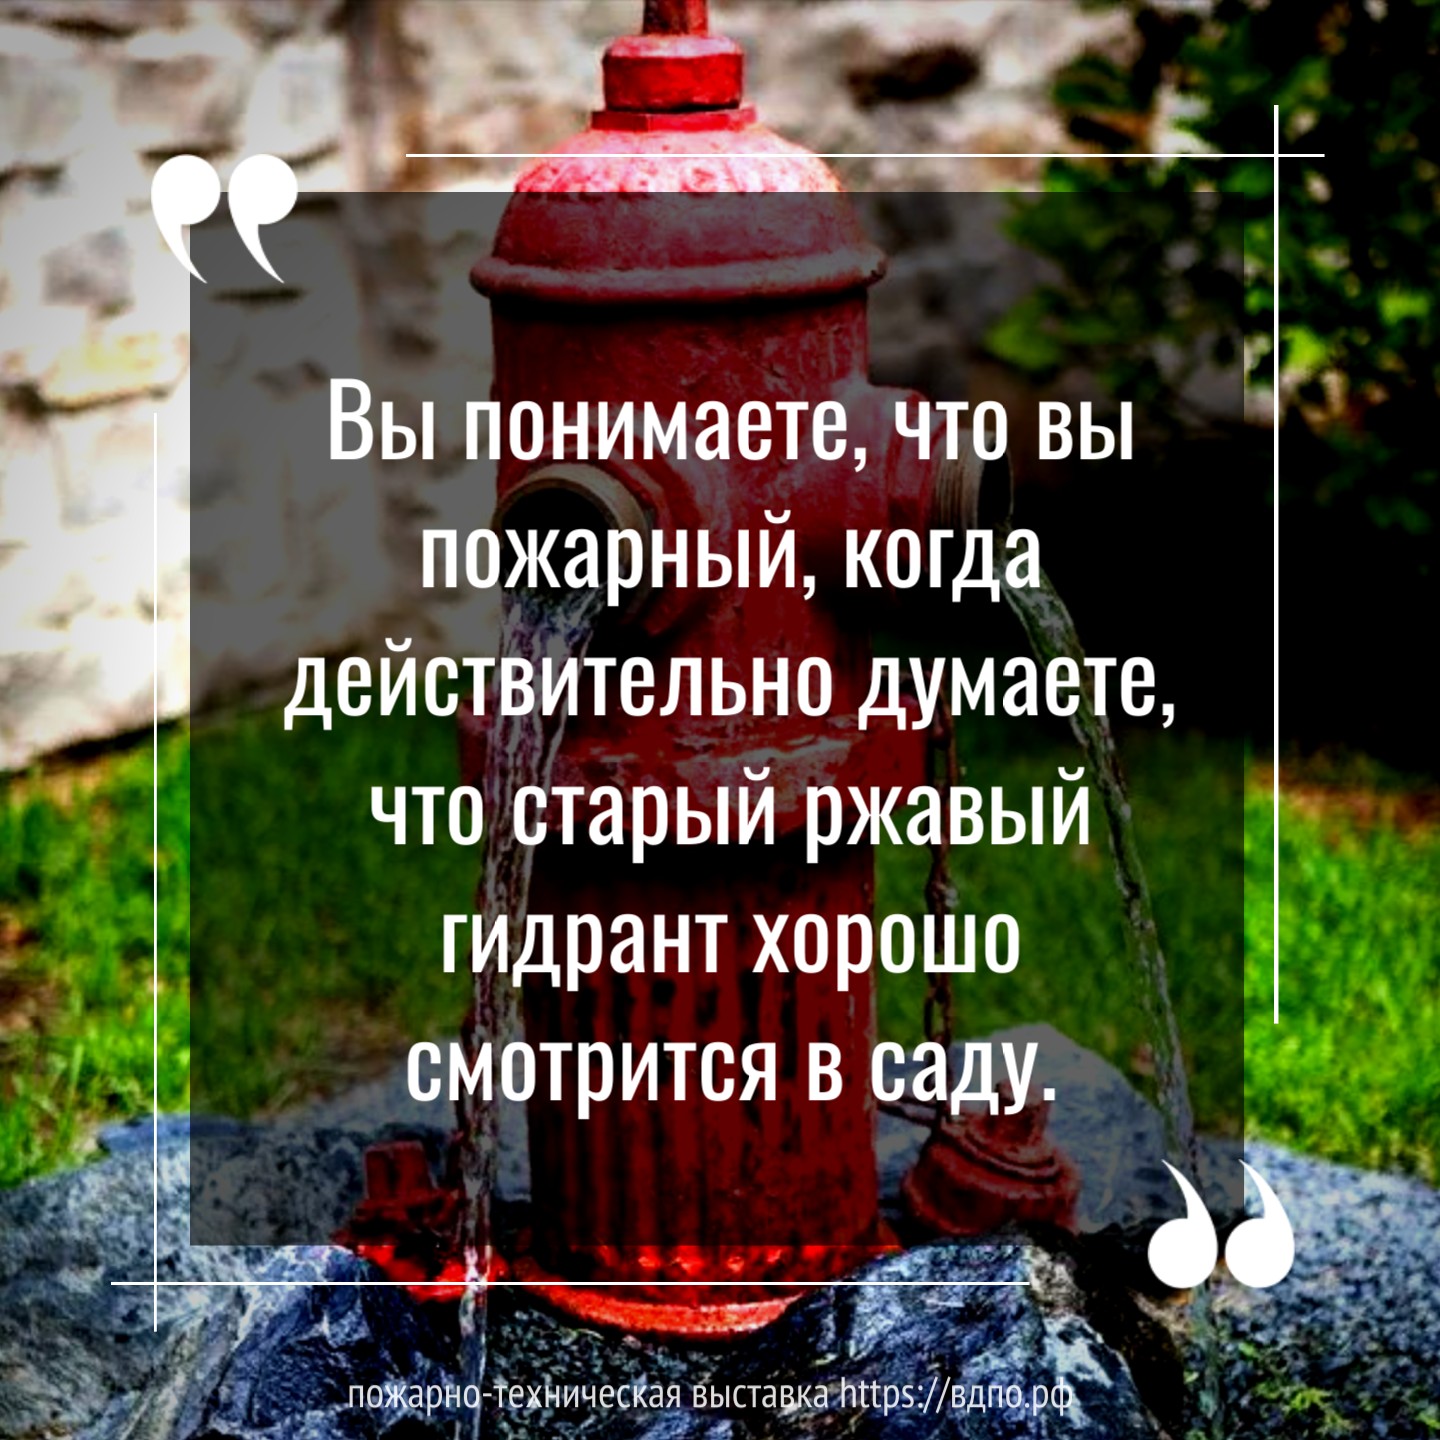 «Вы понимаете, что вы пожарный, когда действительно думаете, что старый ржавый гидрант хорошо смотрится в саду»  Автор неизвестен... ...